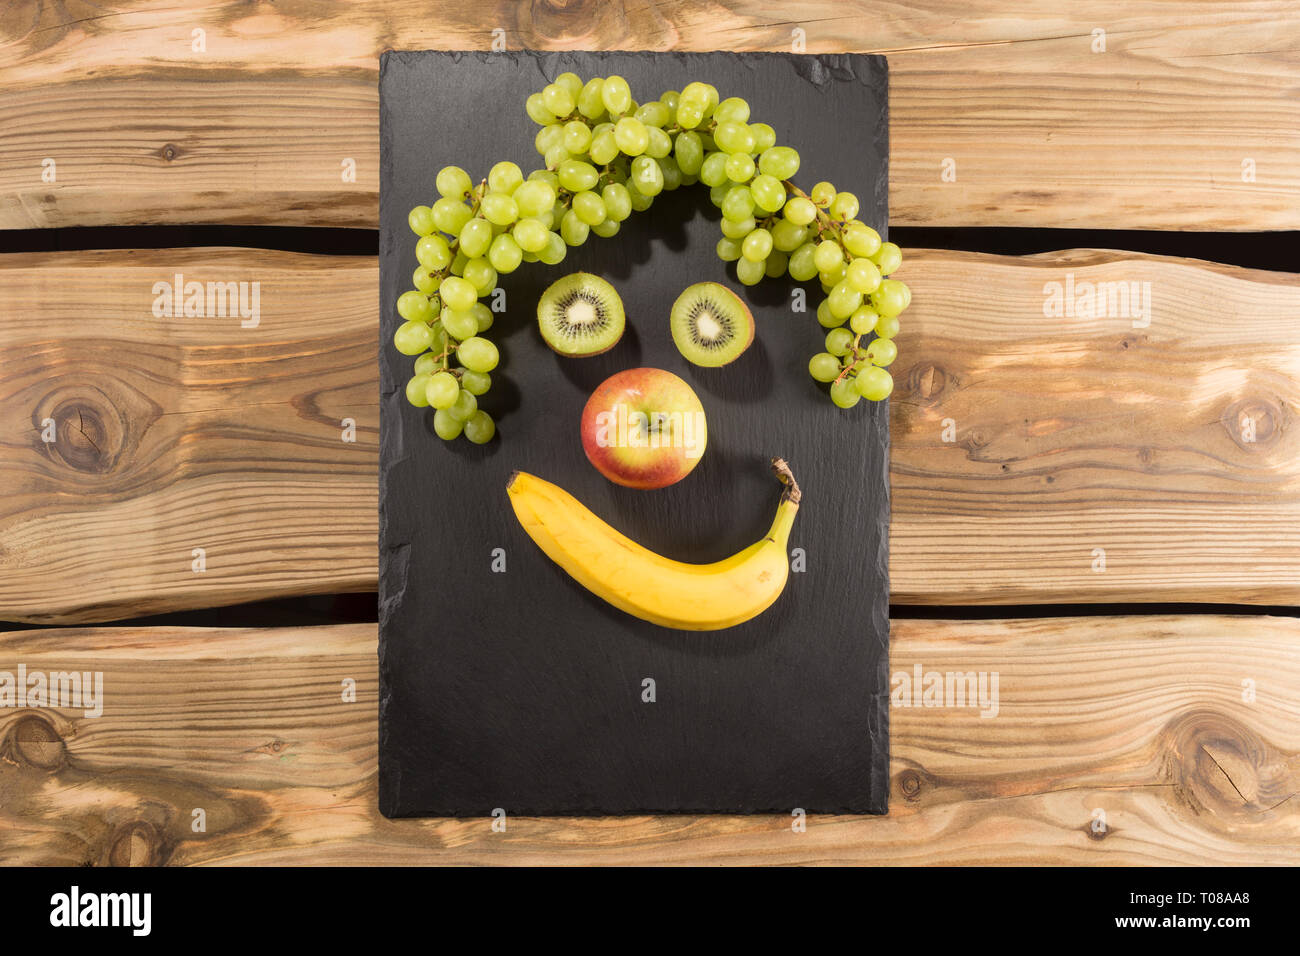 Heureux l'alimentation - visage souriant de fruits frais de pose à plat. Serveur d'Ardoise/Conseil/bac sur planches de bois rustique. Banane, pomme, kiwi et raisin. Banque D'Images